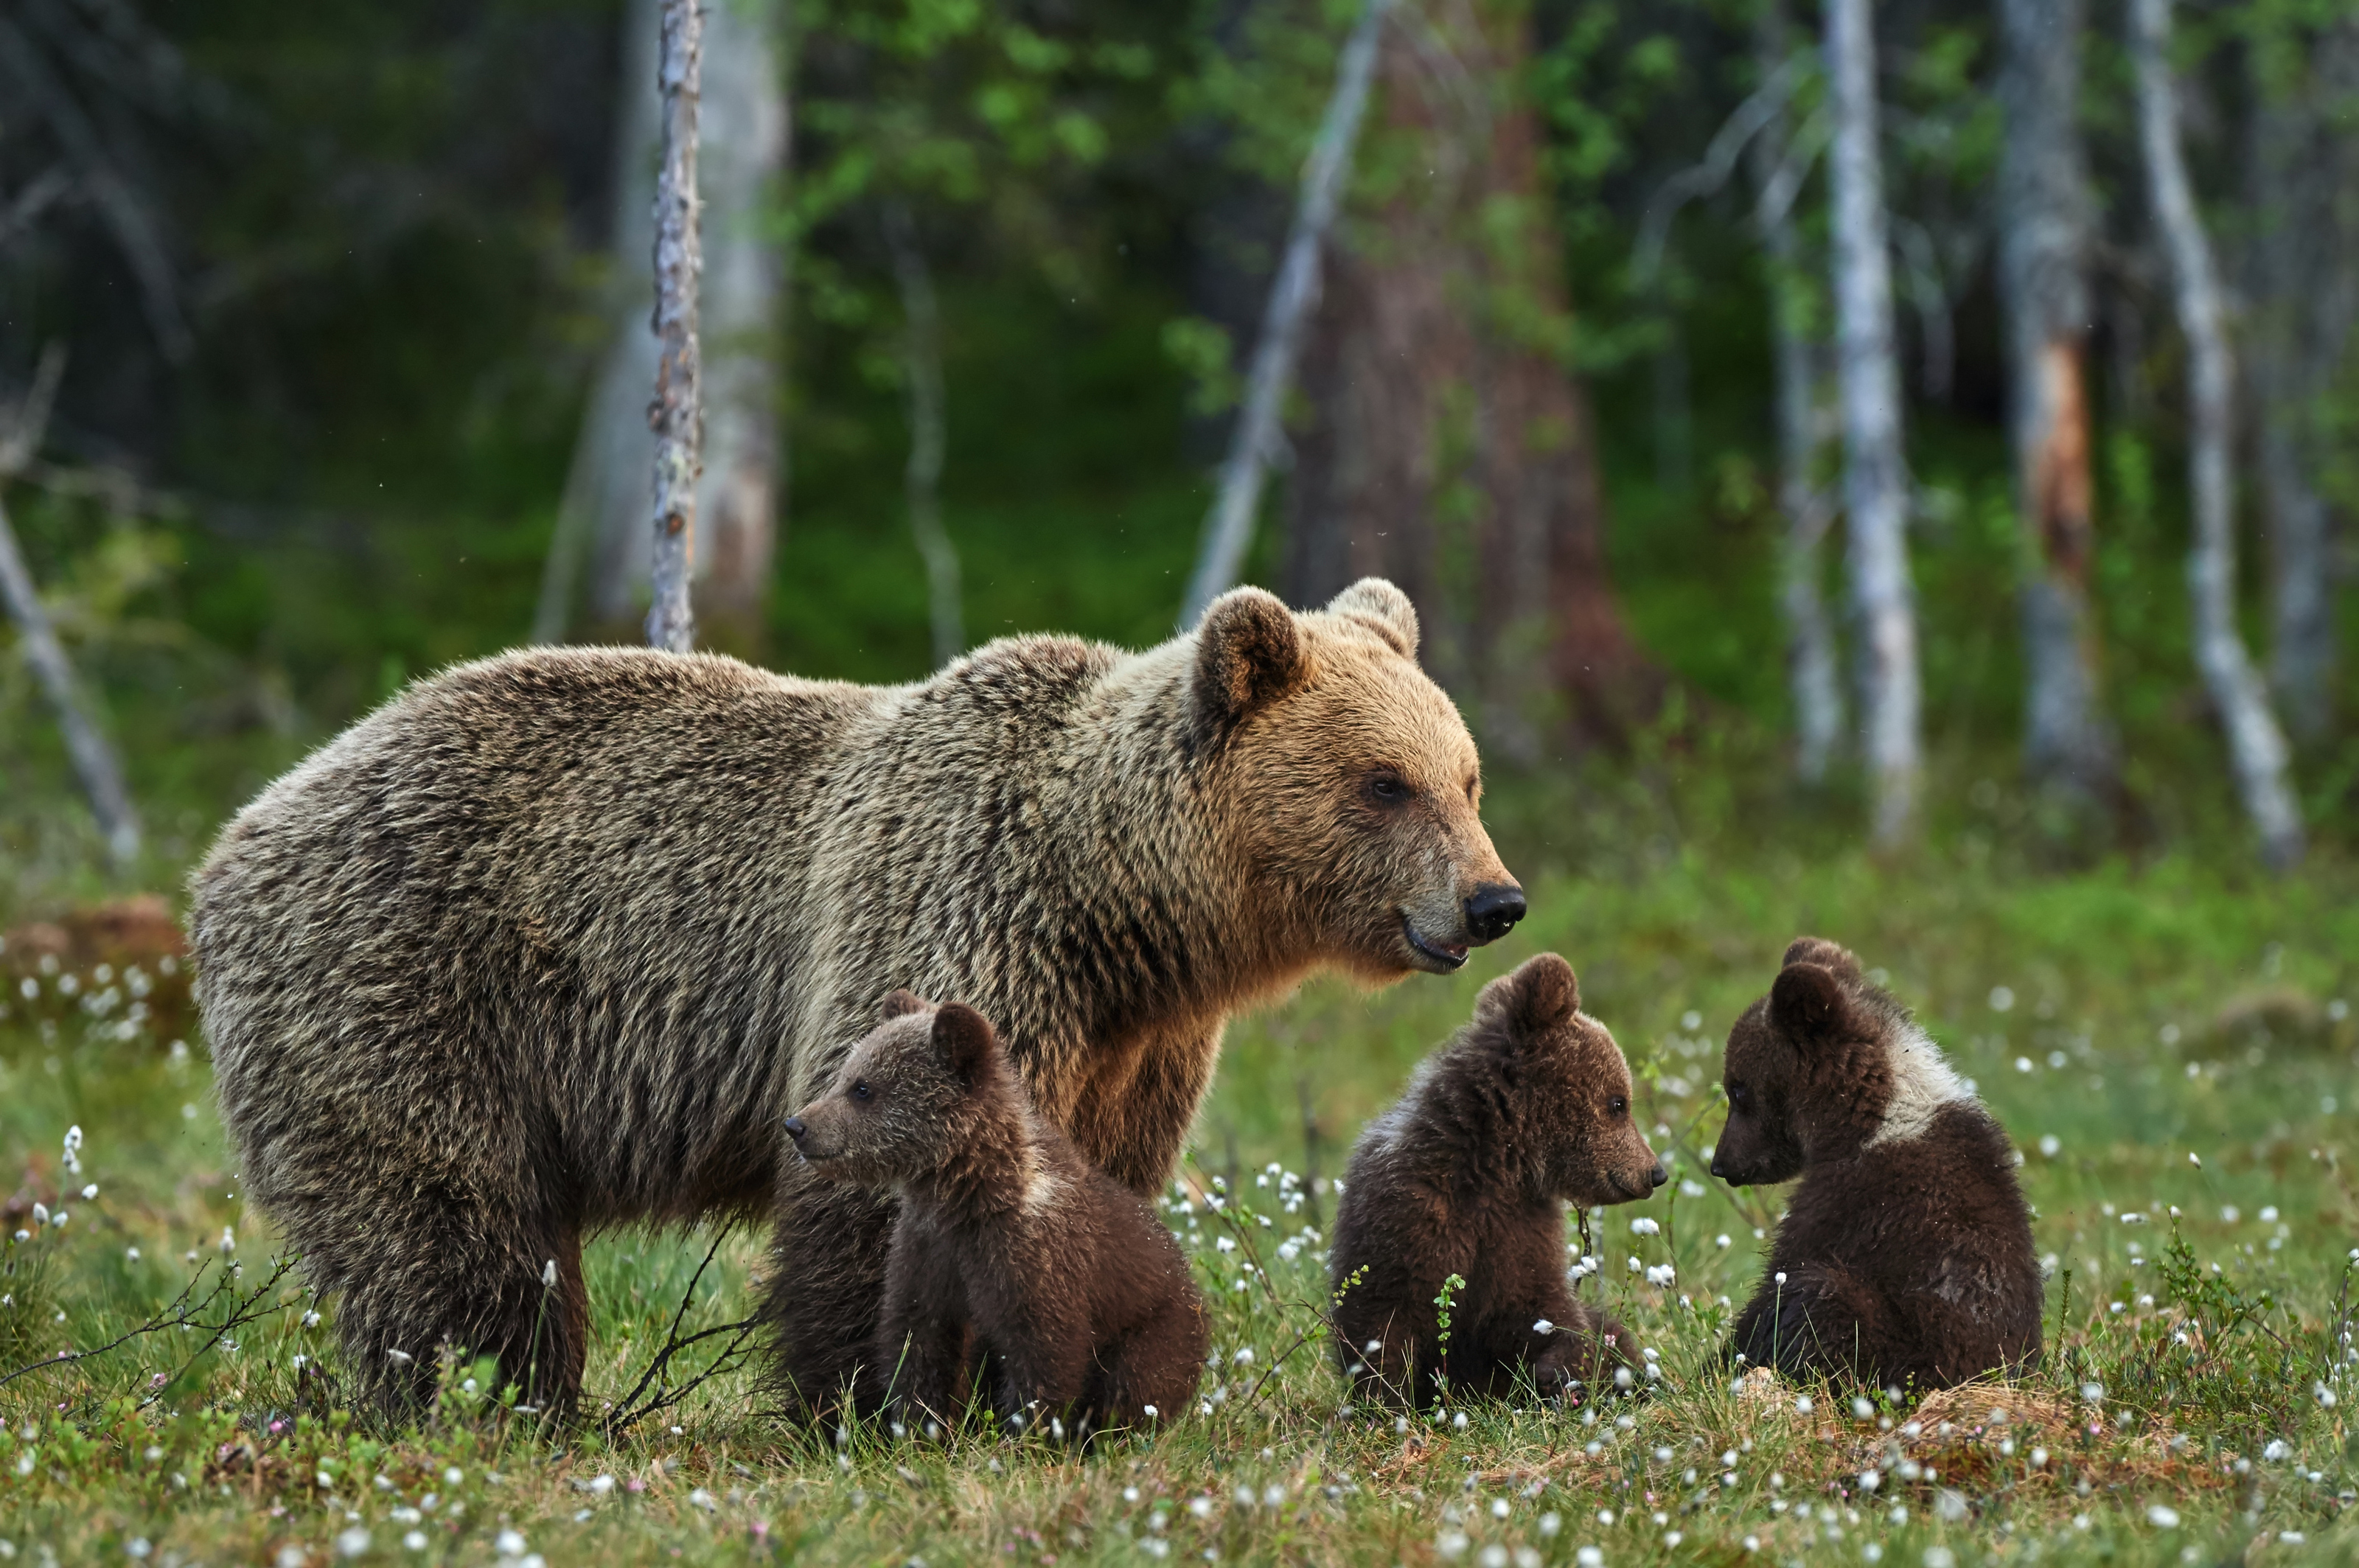 Mama Bear and Three Cubs Mural Wallpaper